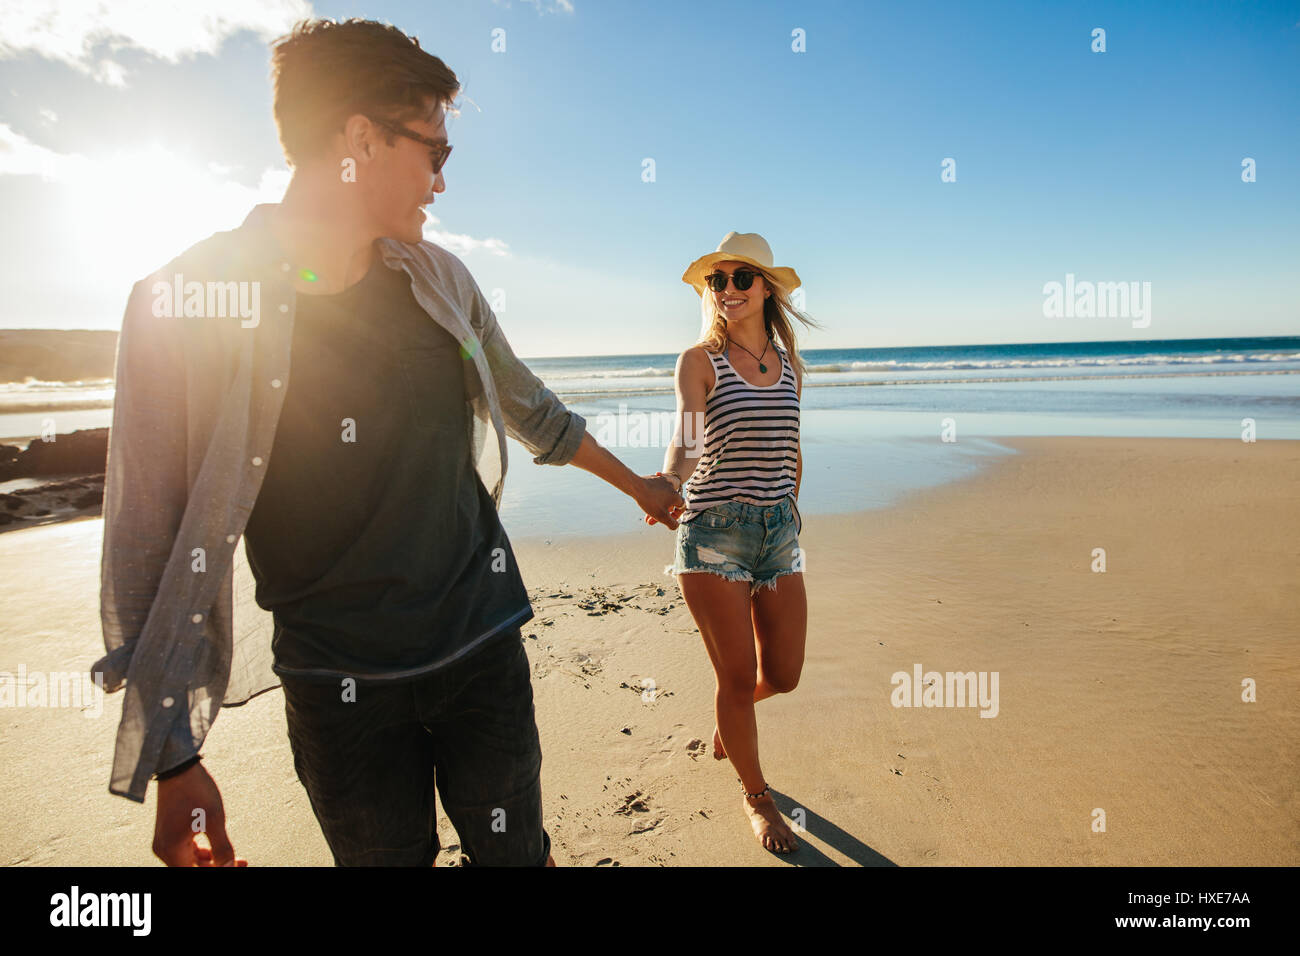 Tourné en plein air romantique de young couple holding hands and walking on beach. Jeune homme et femme marche sur la mer un jour d'été. Banque D'Images